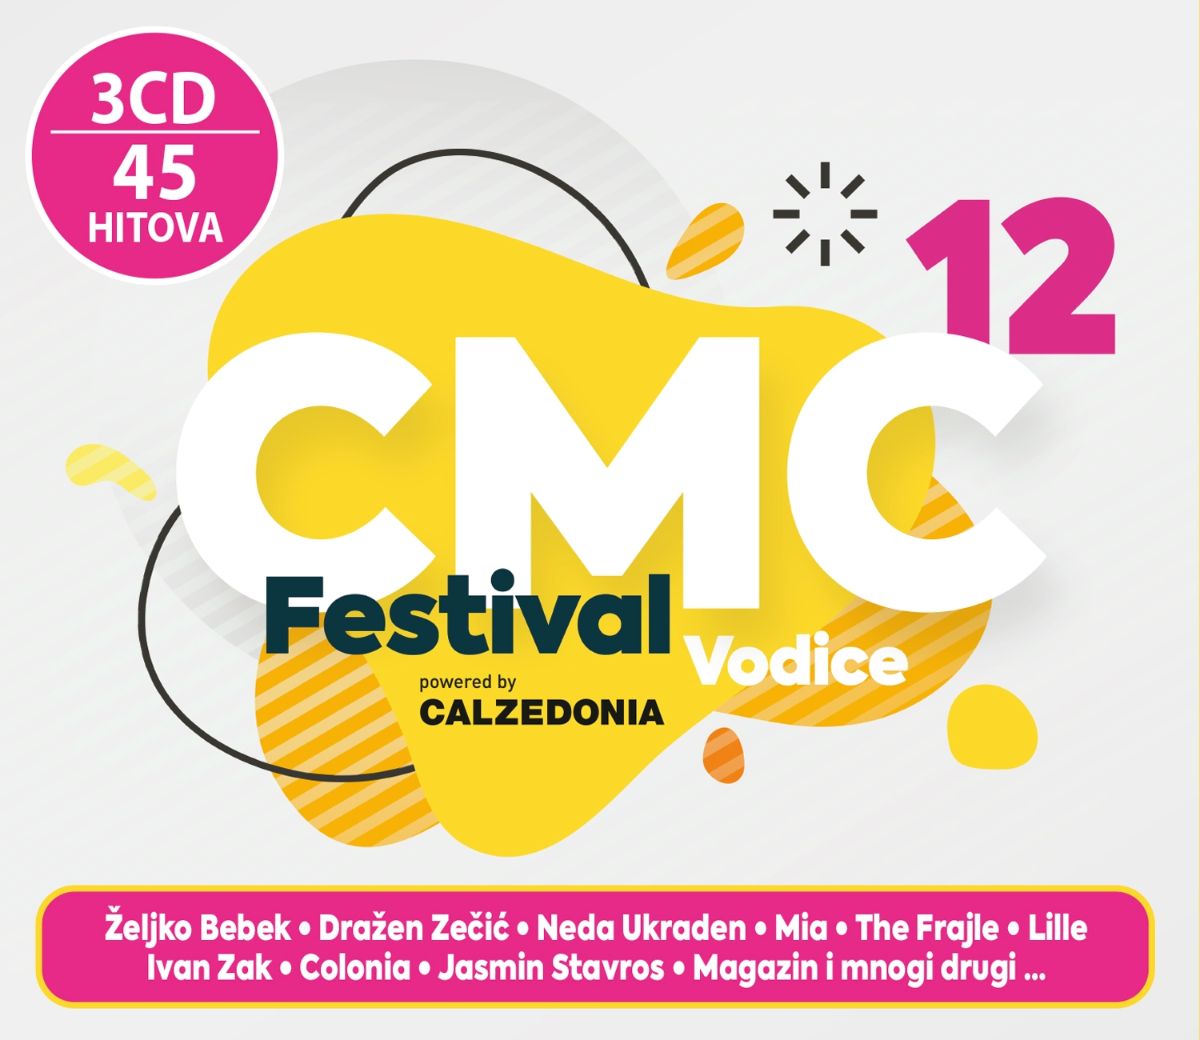 CMC festival Vodice 2020. powered by Calzedonia ove godine u drugačijem izdanju